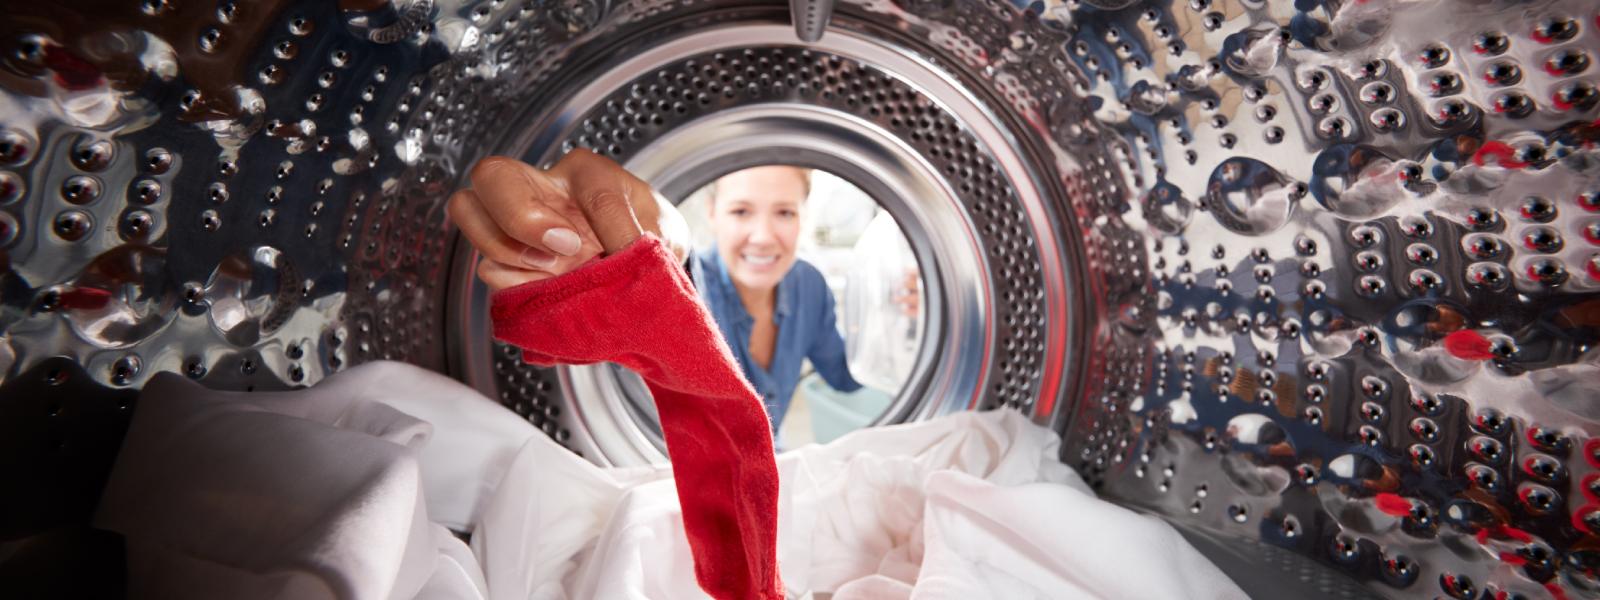 Femme regardant à l'intérieur de la machine à laver